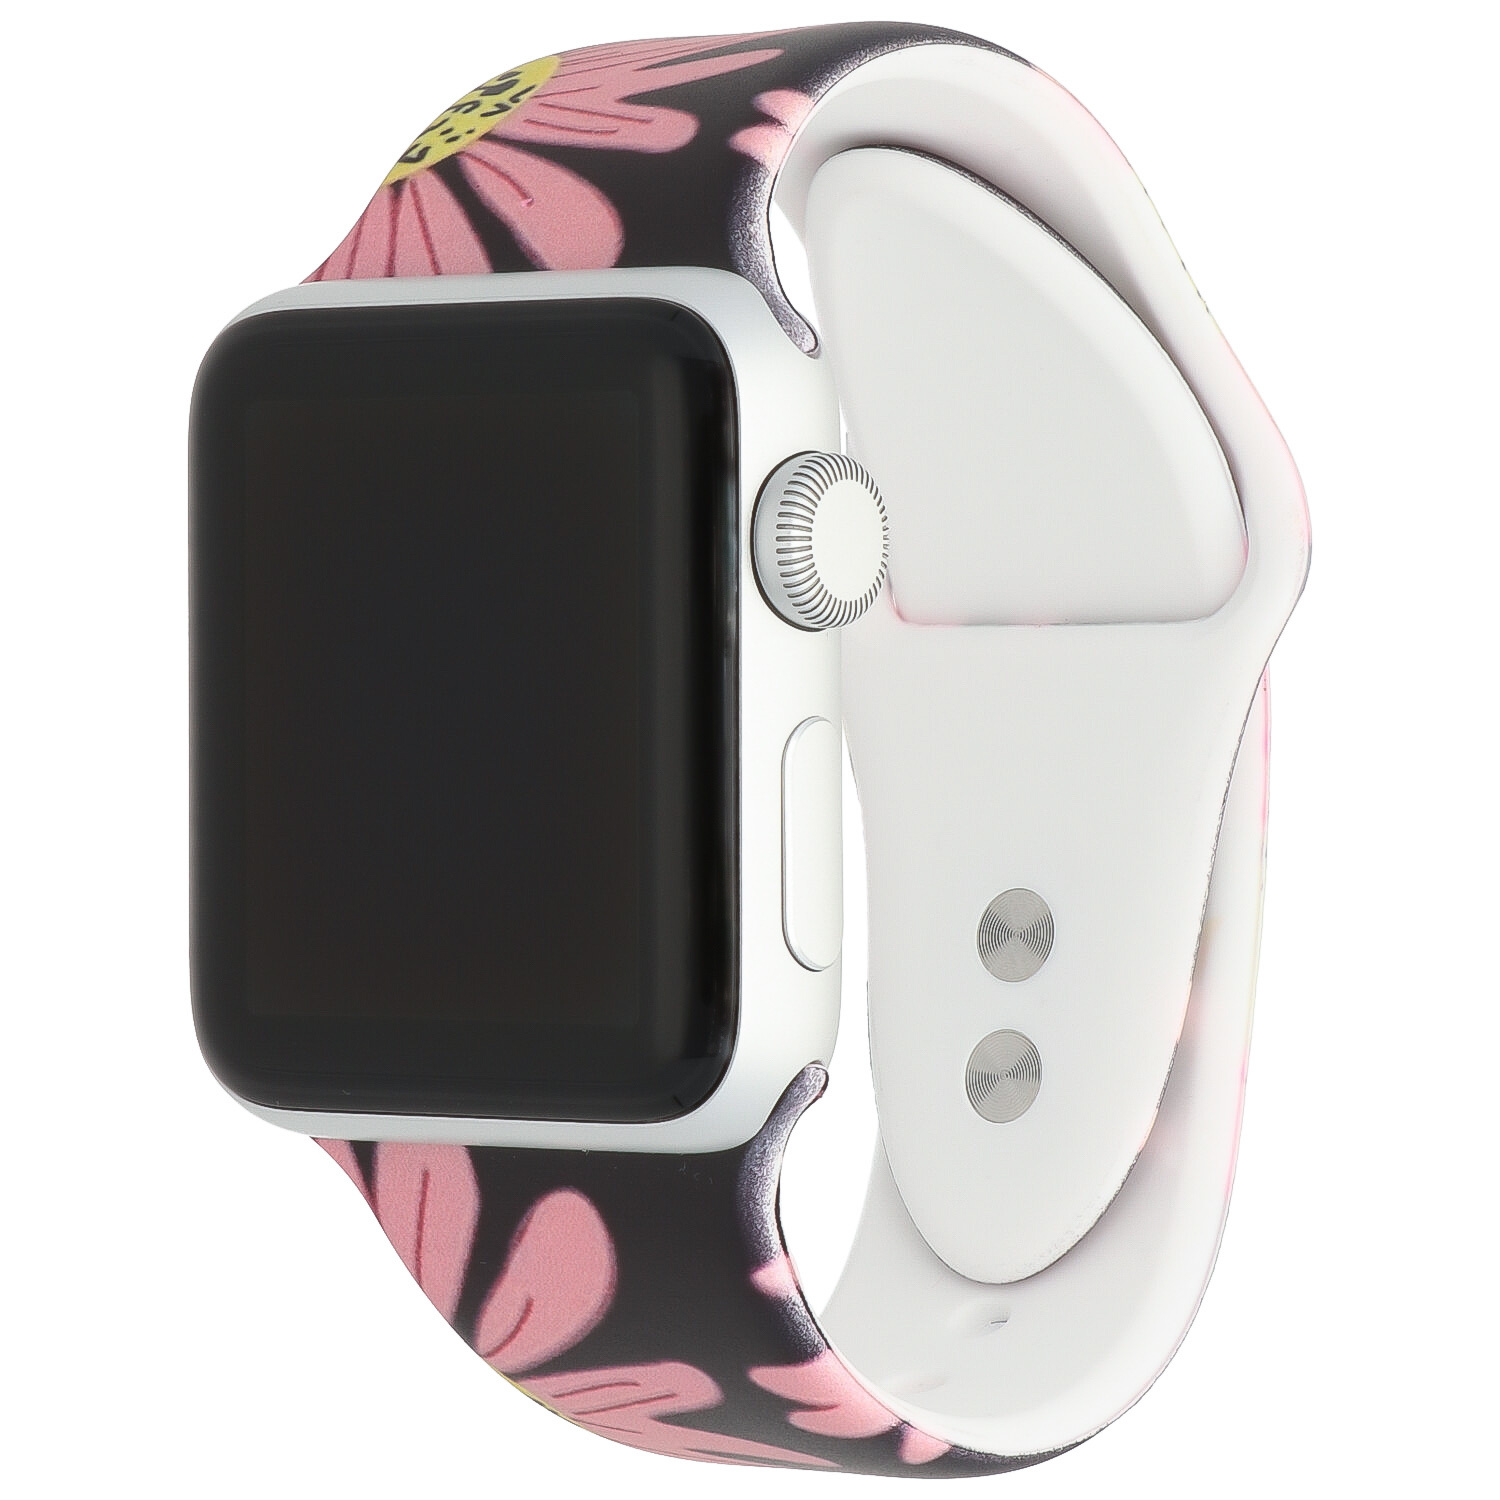  Apple Watch nyomtatás sport szalag - margaréta